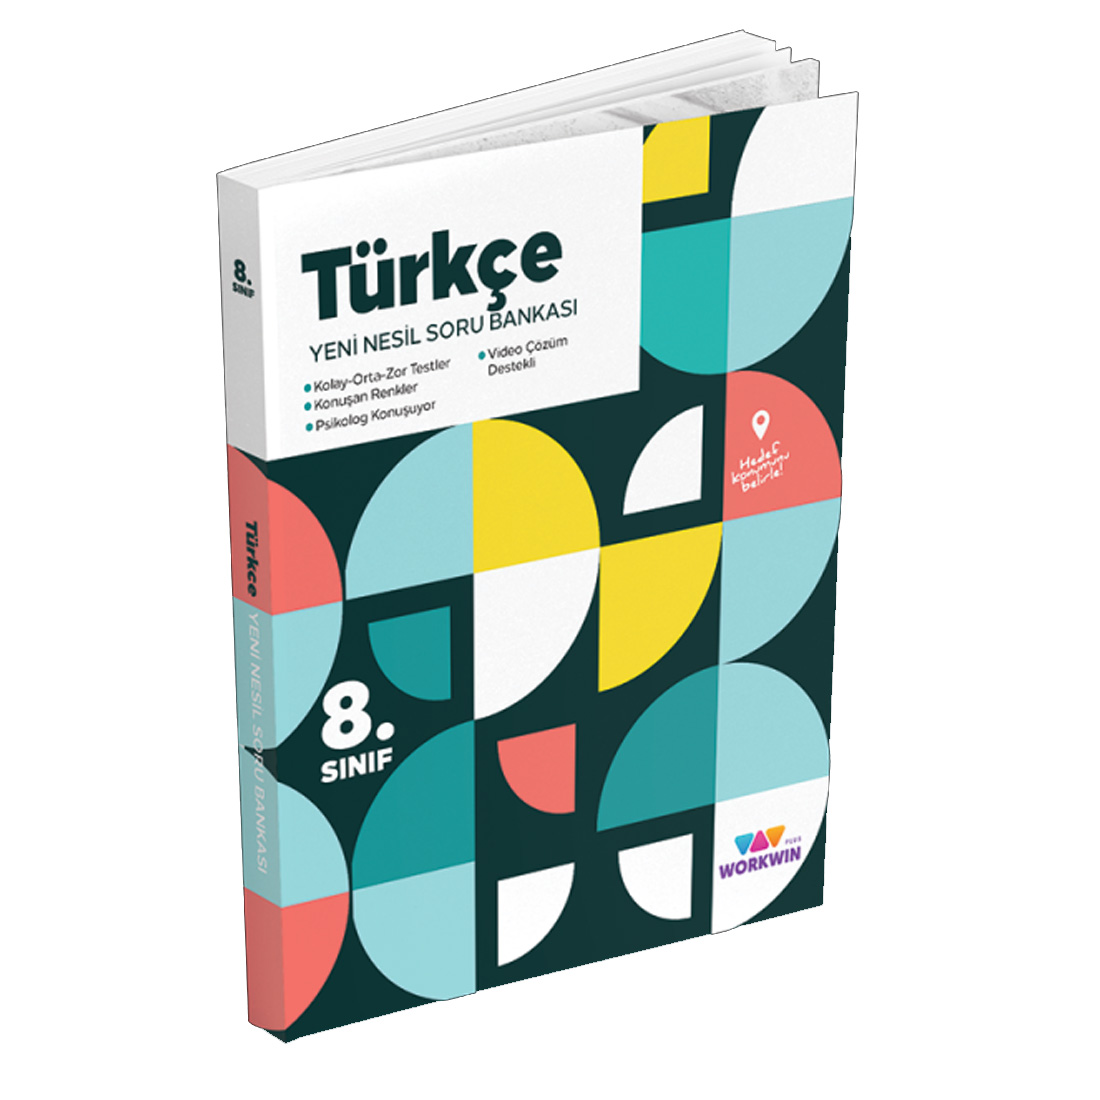 Workwin Yayınları 8. Sınıf Türkçe Yeni Nesil Soru Bankası